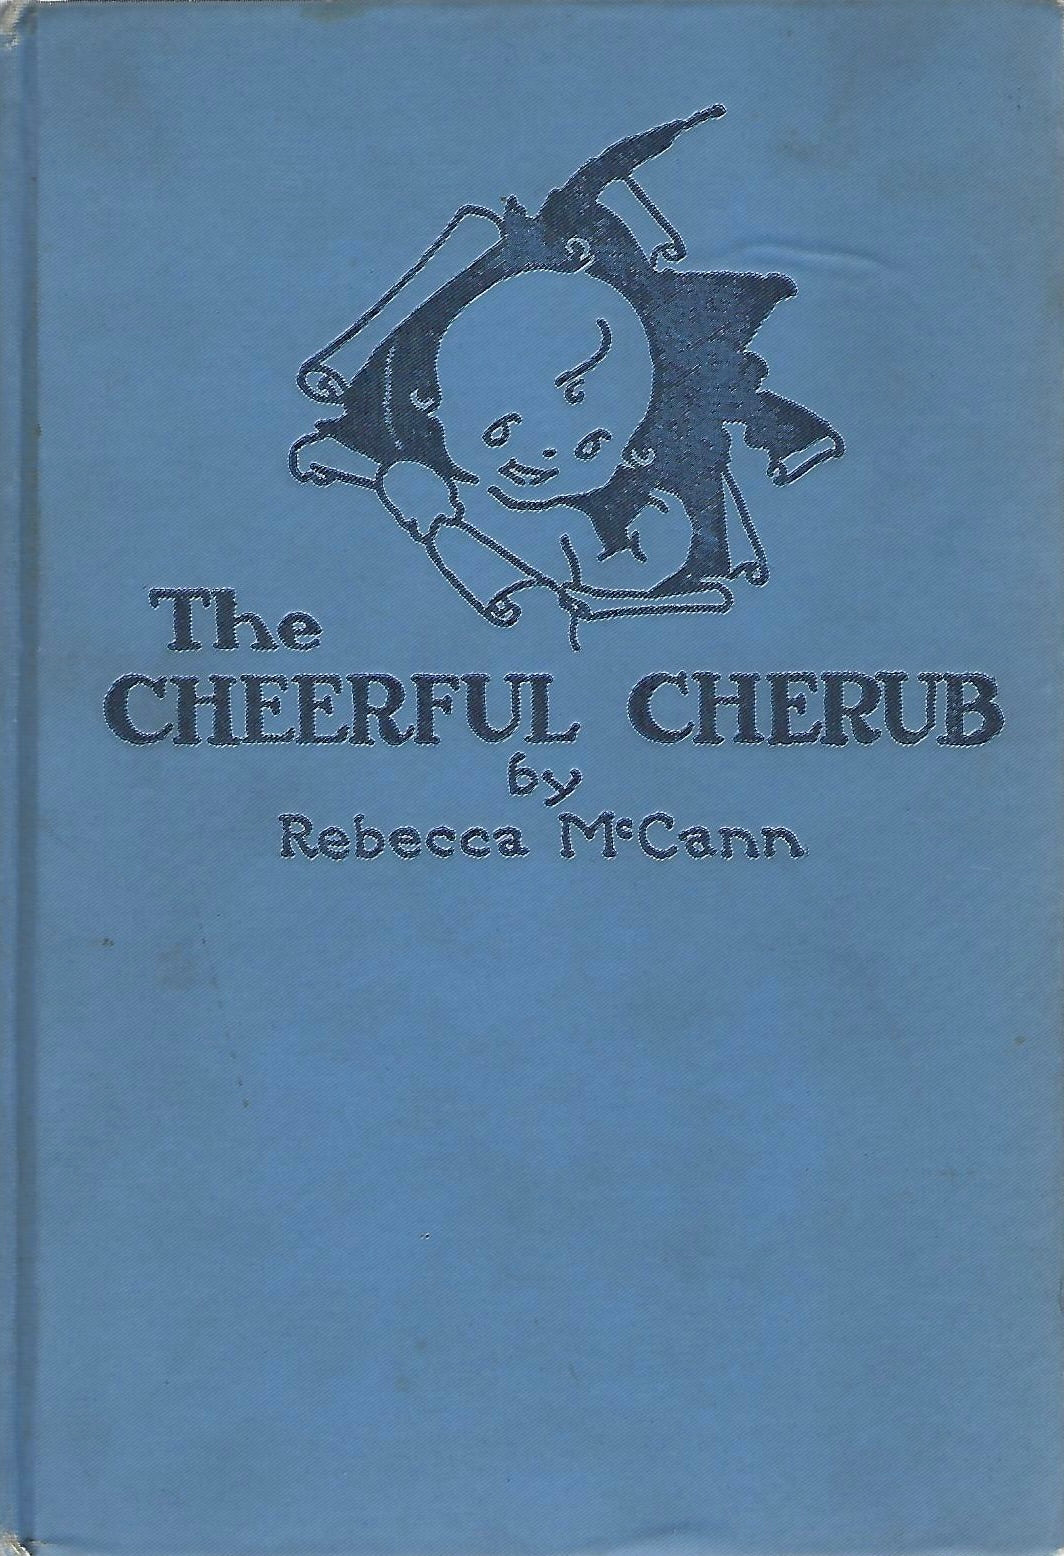 The Cheerful Cherub